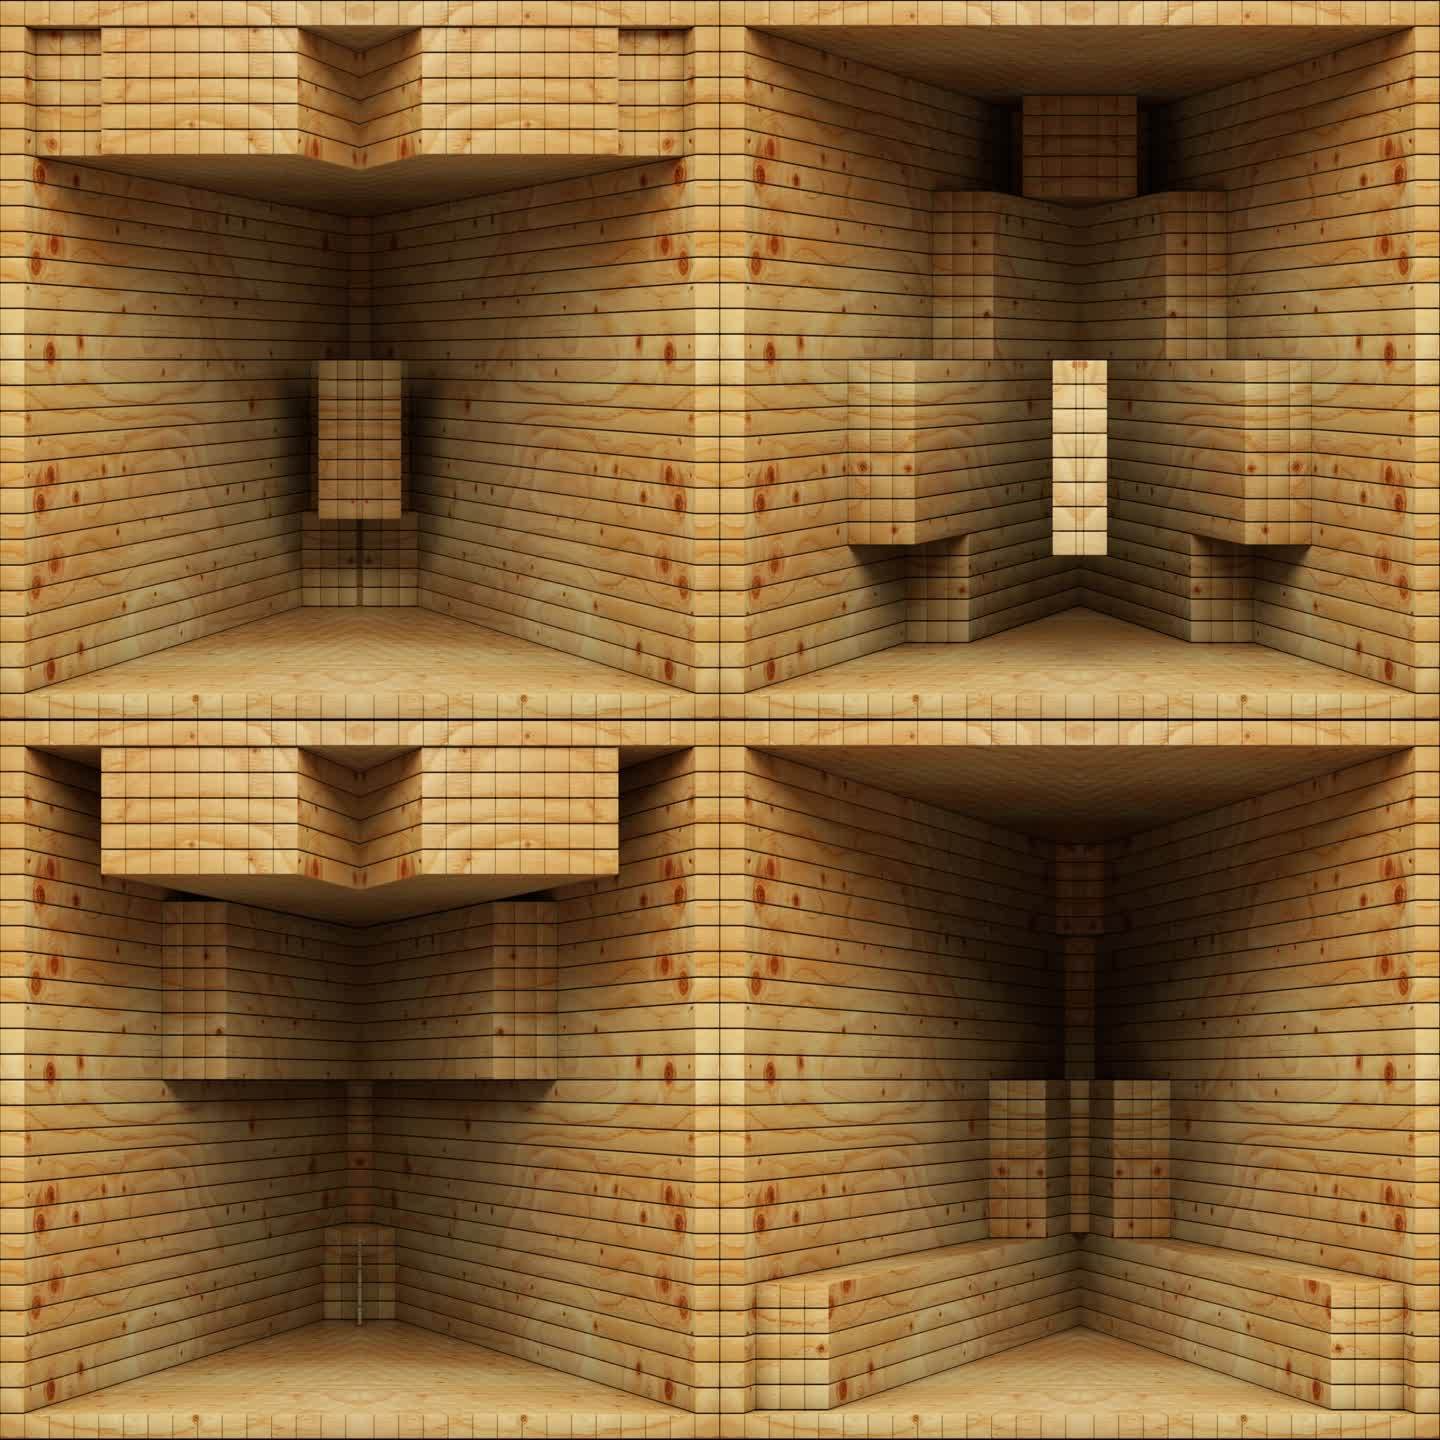 【裸眼3D】木方原木空间自然几何立体结构